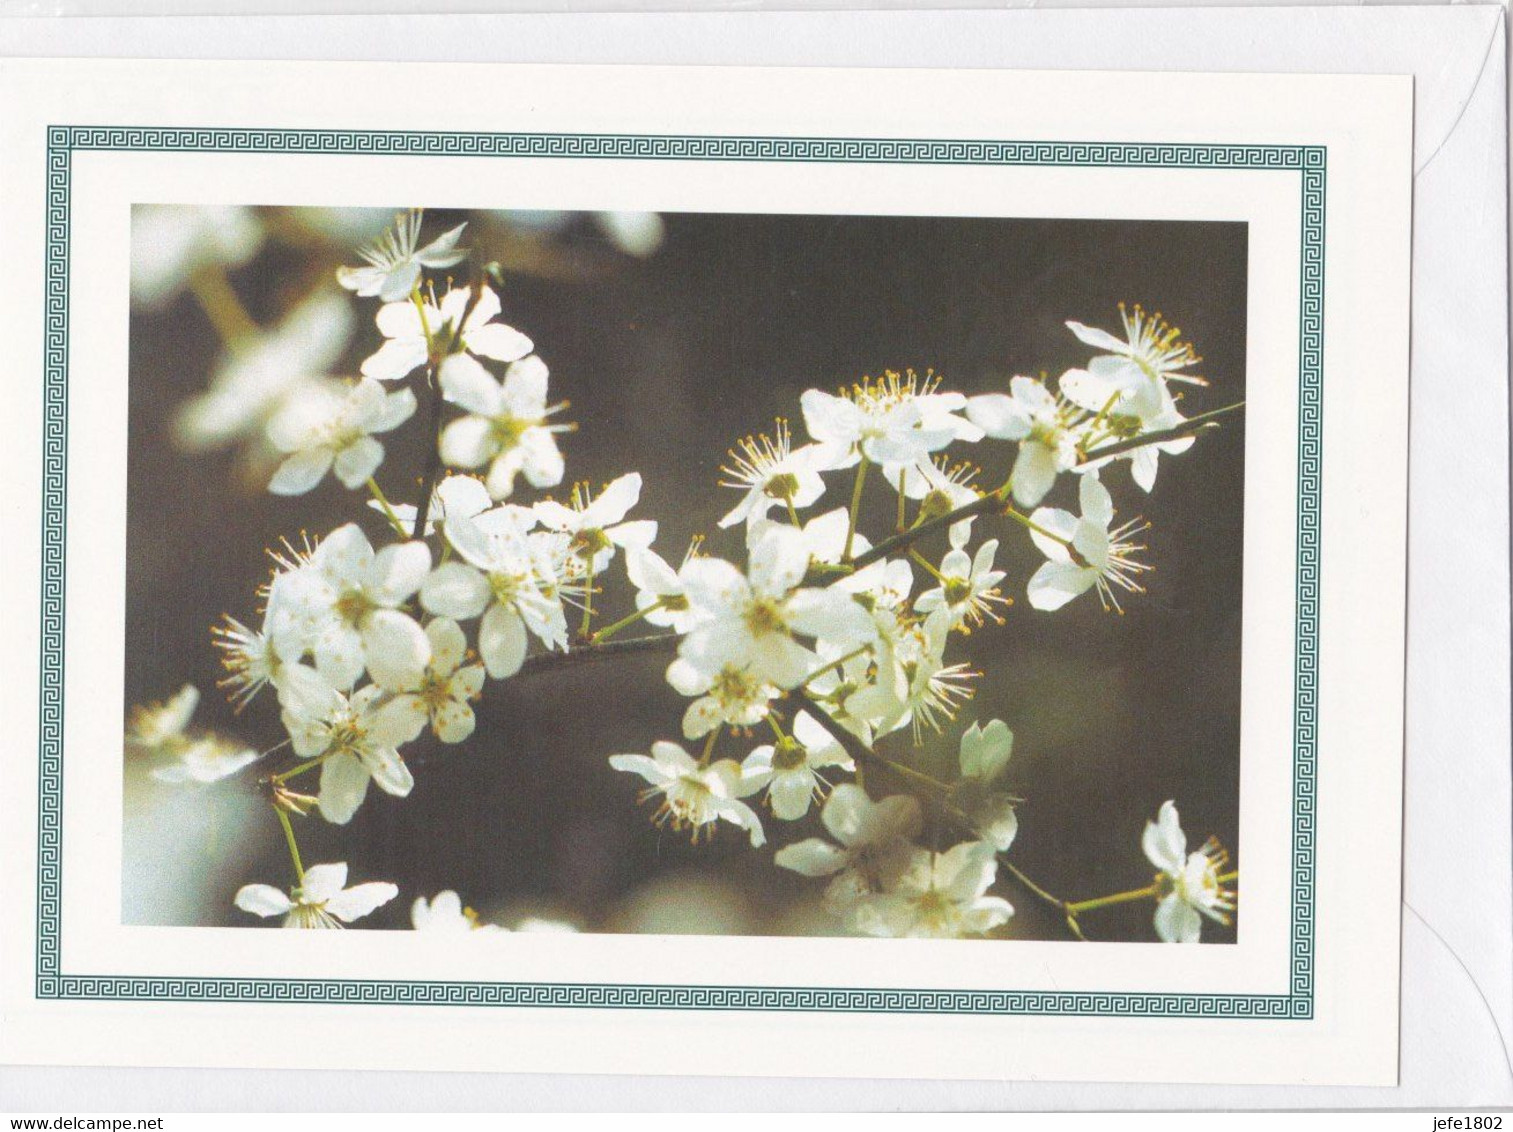 Postogram 124 / 97 - Kersenbloesem - Christine Nyst - Cherrie Blossoms - Postogram